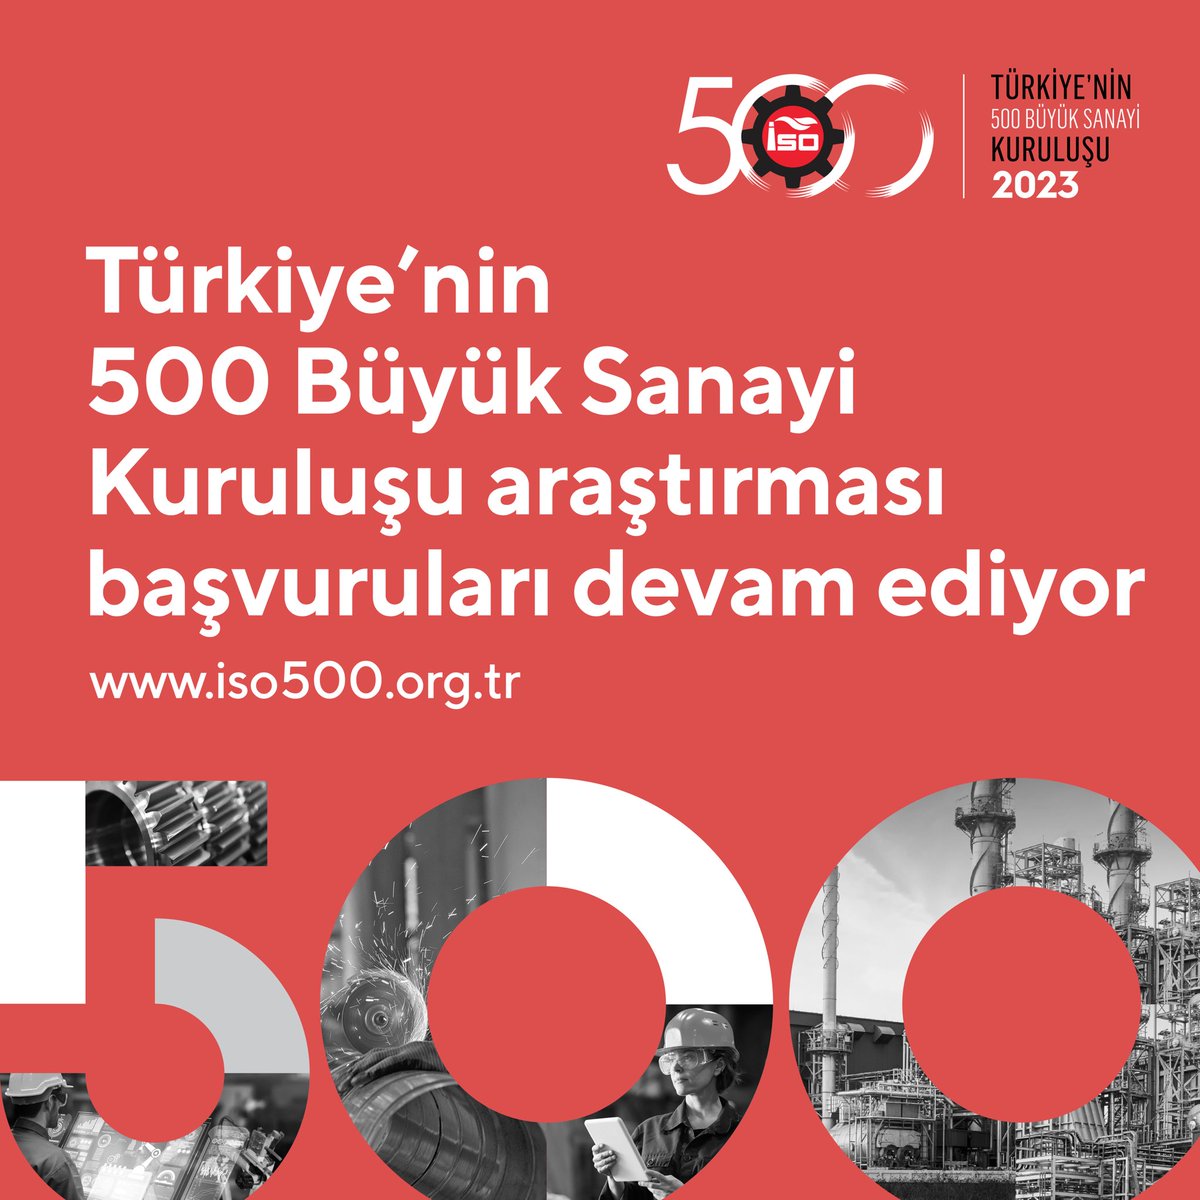 🏭 “Türkiye’nin 500 Büyük Sanayi Kuruluşu”na başvurular devam ediyor! İSO 500, Türkiye’nin en büyük sanayi firmalarını belirliyor. Siz de şirketinizin bu listeye dahil olmasını istiyorsanız, başvurularınızı en geç 3 Mayıs 2024 tarihine kadar tamamlayabilirsiniz. 🗓️ Son Başvuru